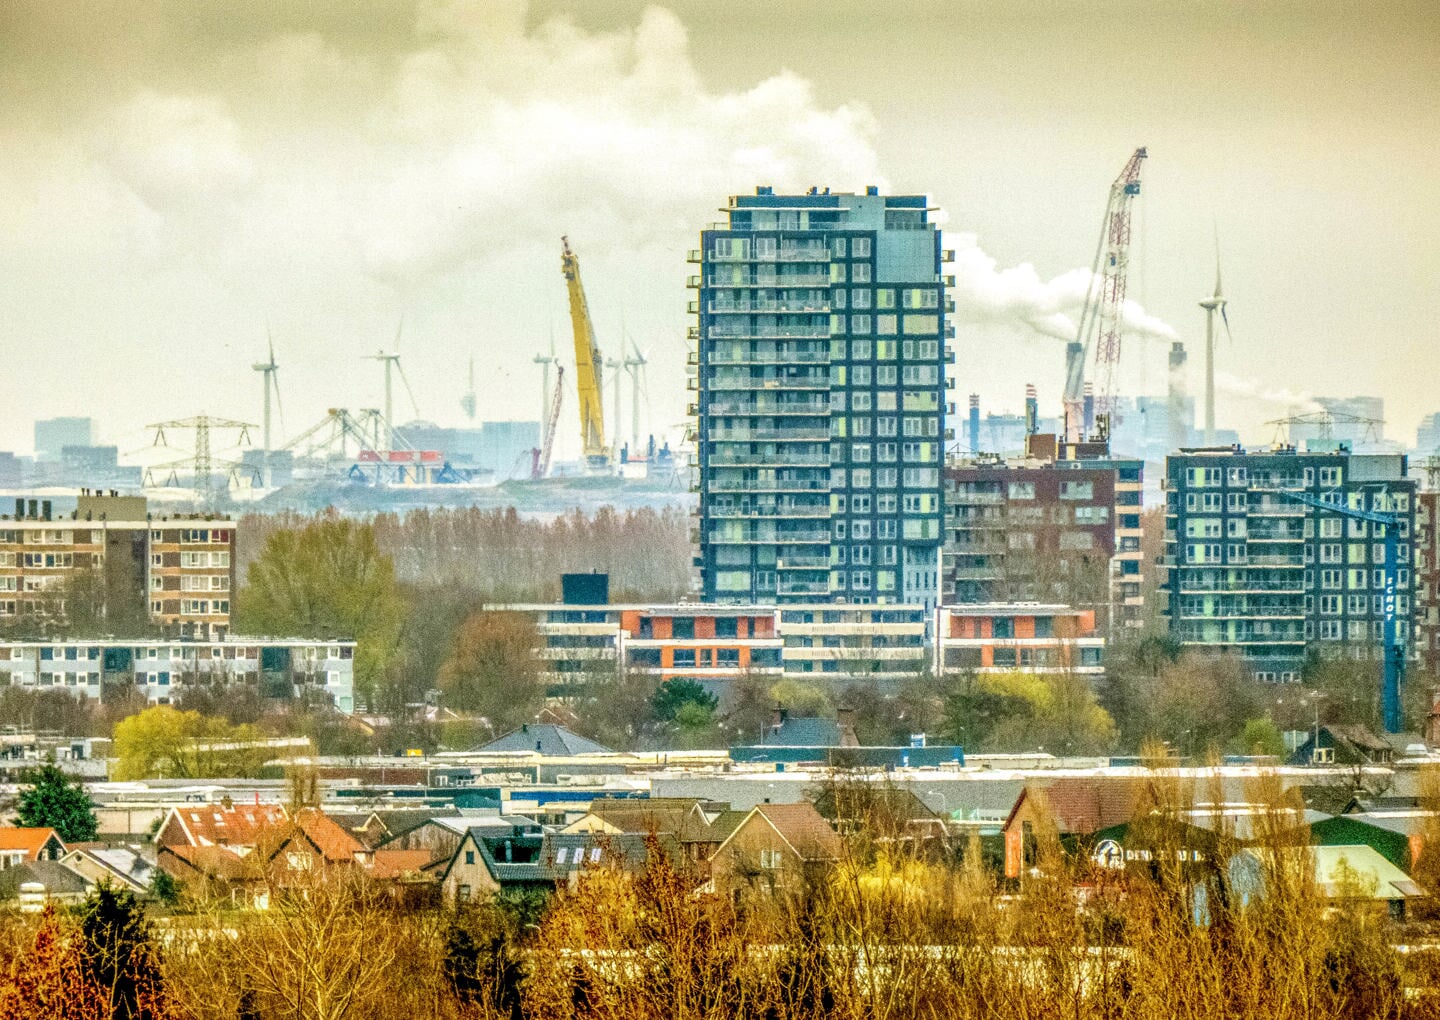 Beverwijk, met op de achtergrond de havens van Amsterdam, is met een verrekijker op deze wijze op het hoogste punt te ontdekken.